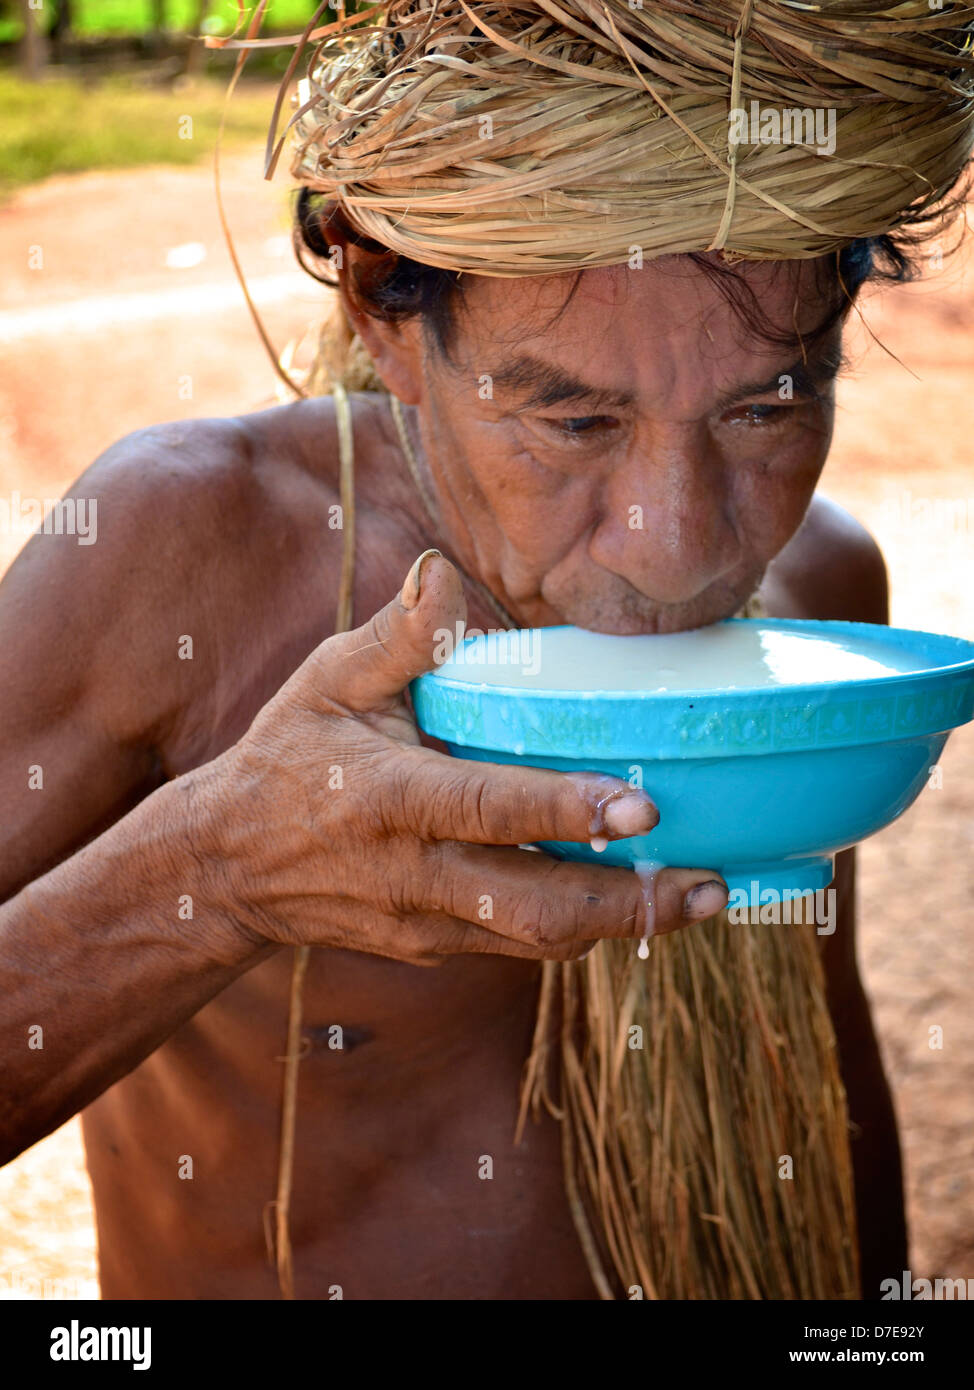 Un uomo amazzonica dalla tribù Yagua bevande Chicha tradizionali, una bevanda fatta da masticazione e fermentati manioca/radice di manioca. Foto Stock